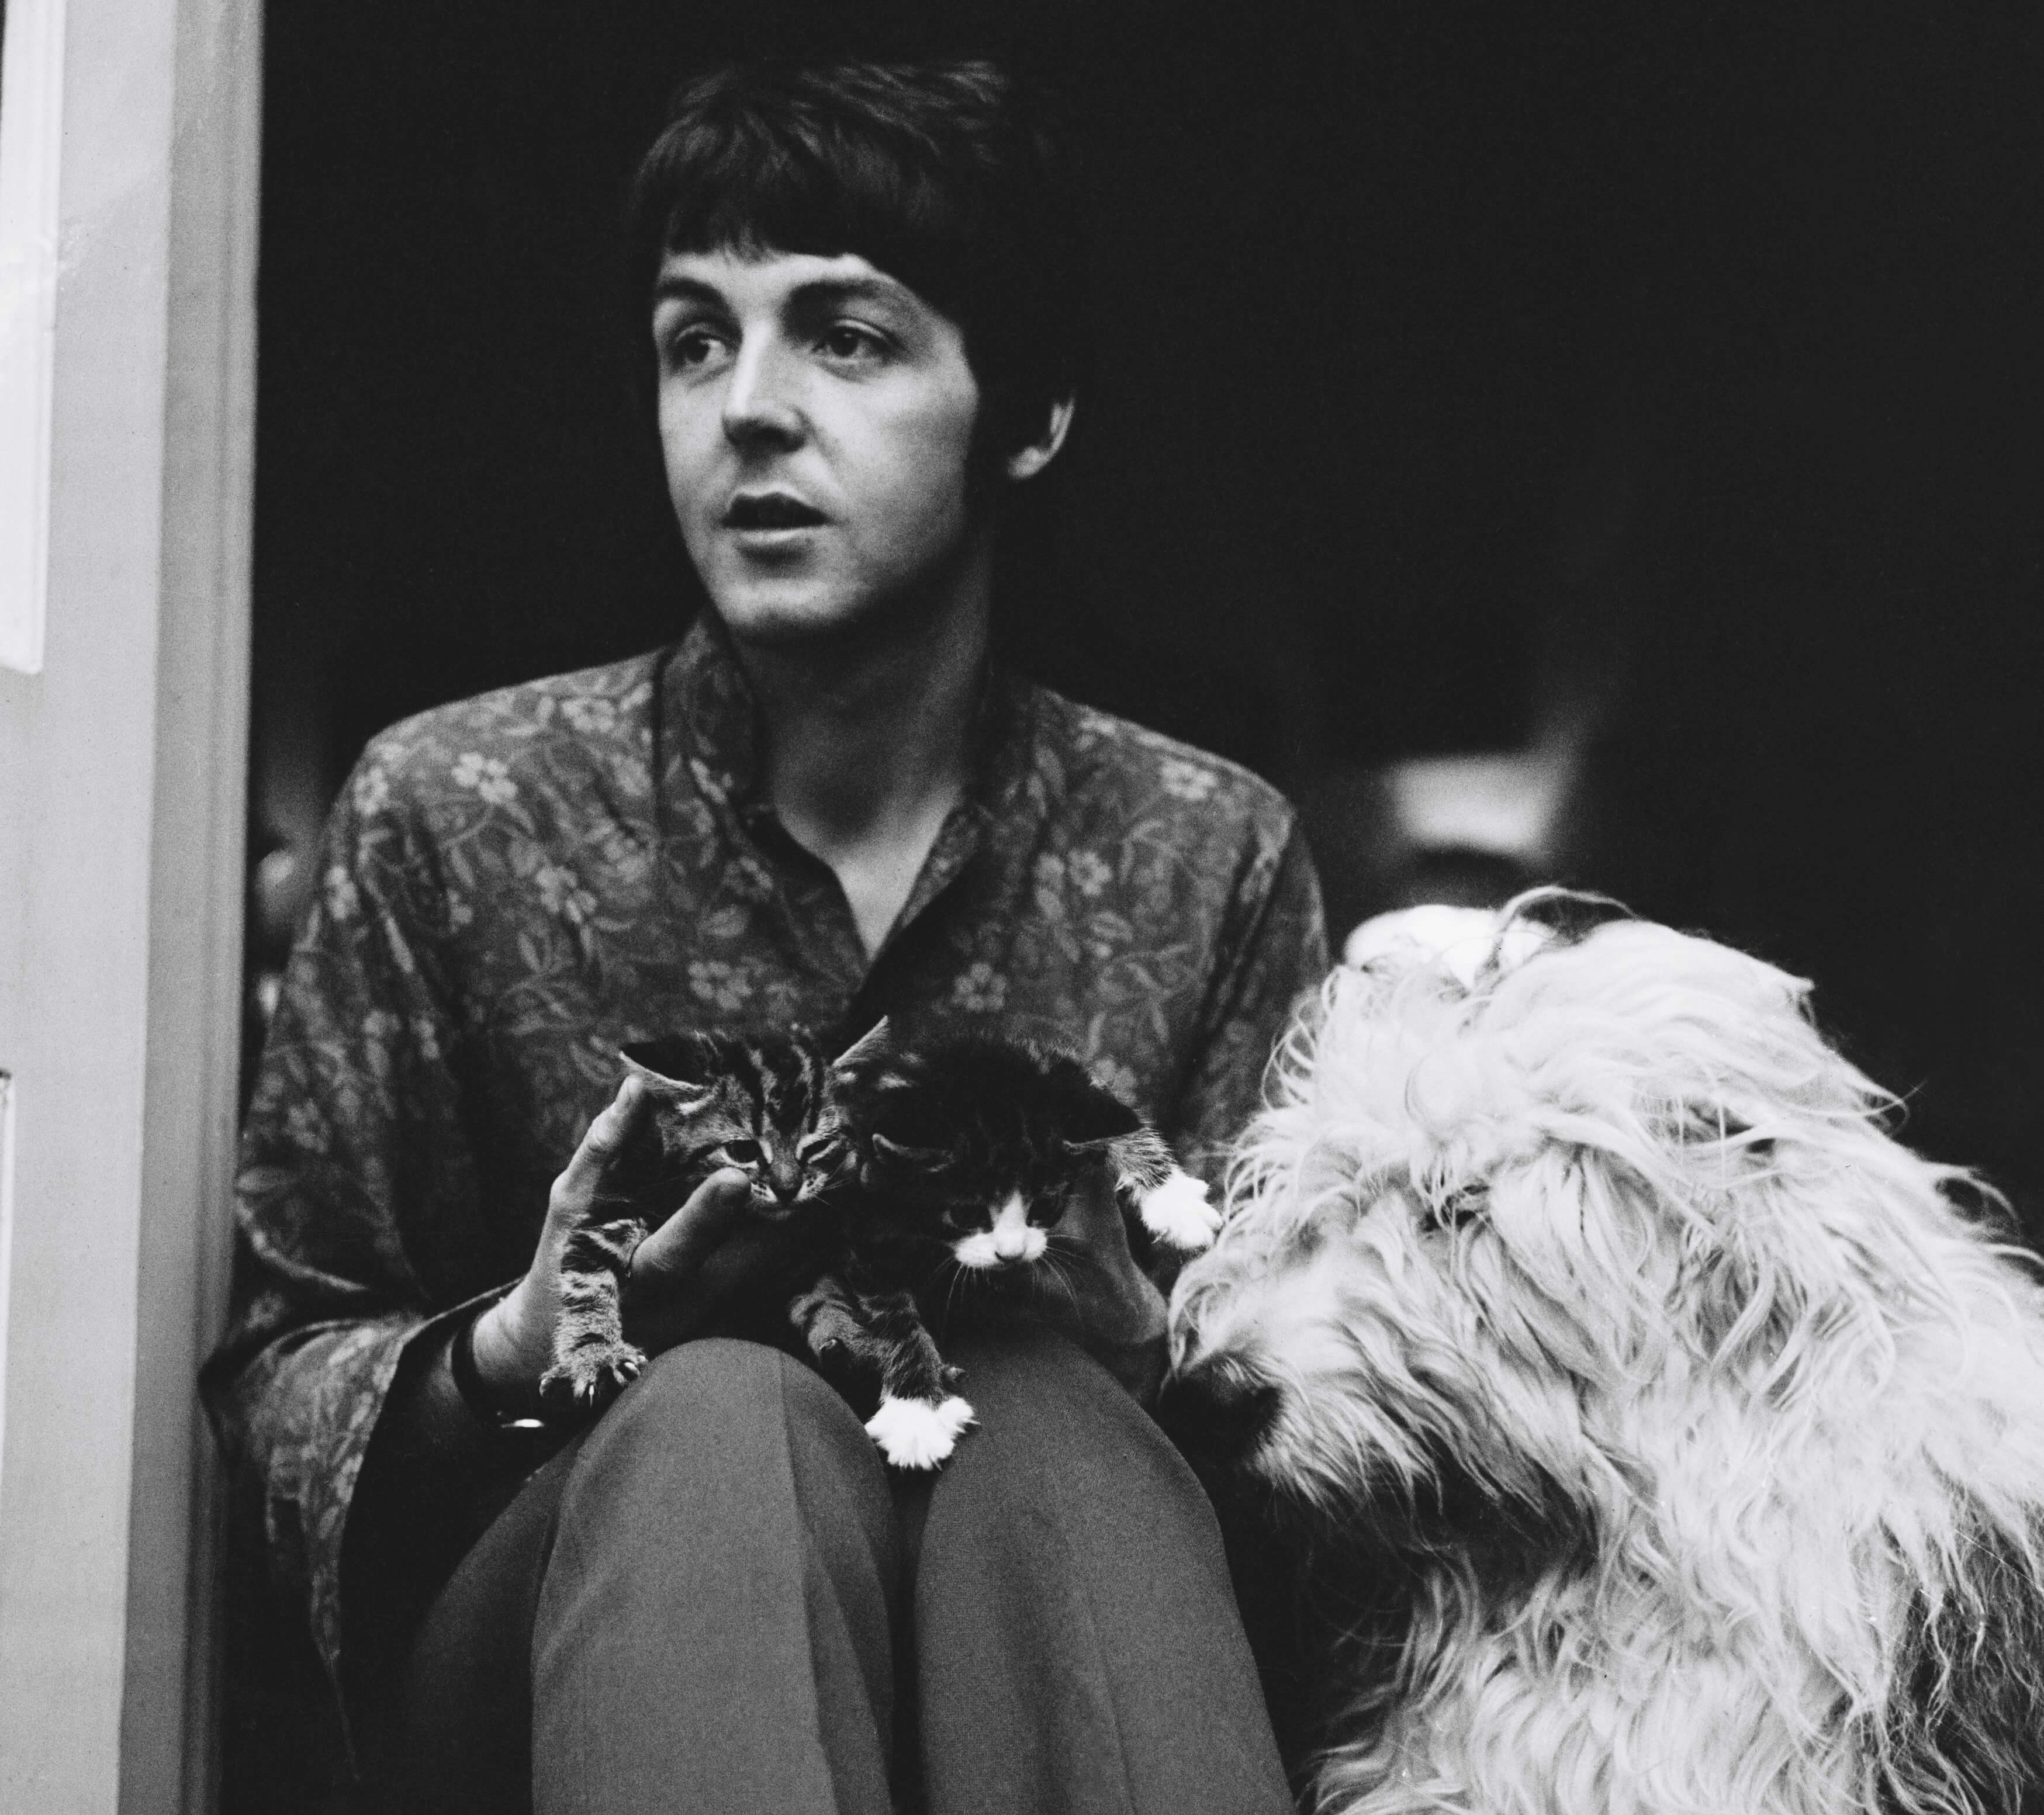 Paul McCartney with a dog